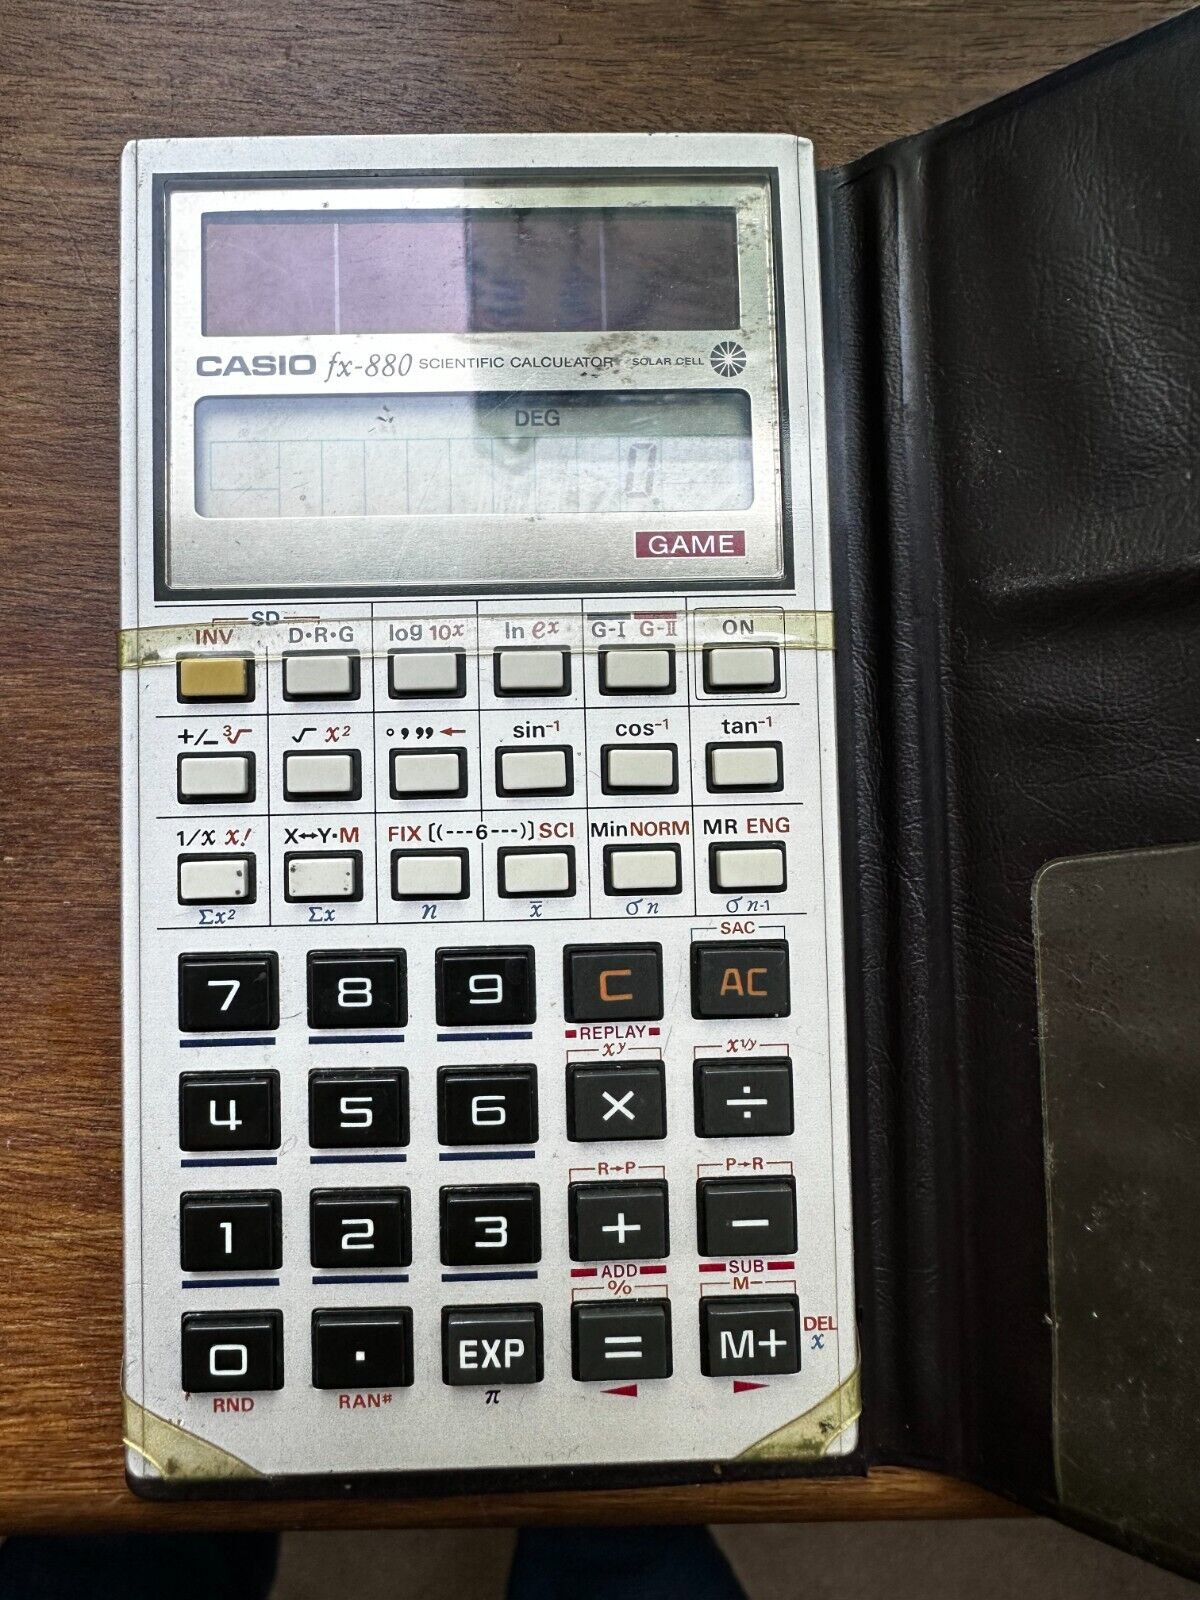 Very Rare Casio FX-880 Solar LCD Scientific Calculator with Two Games